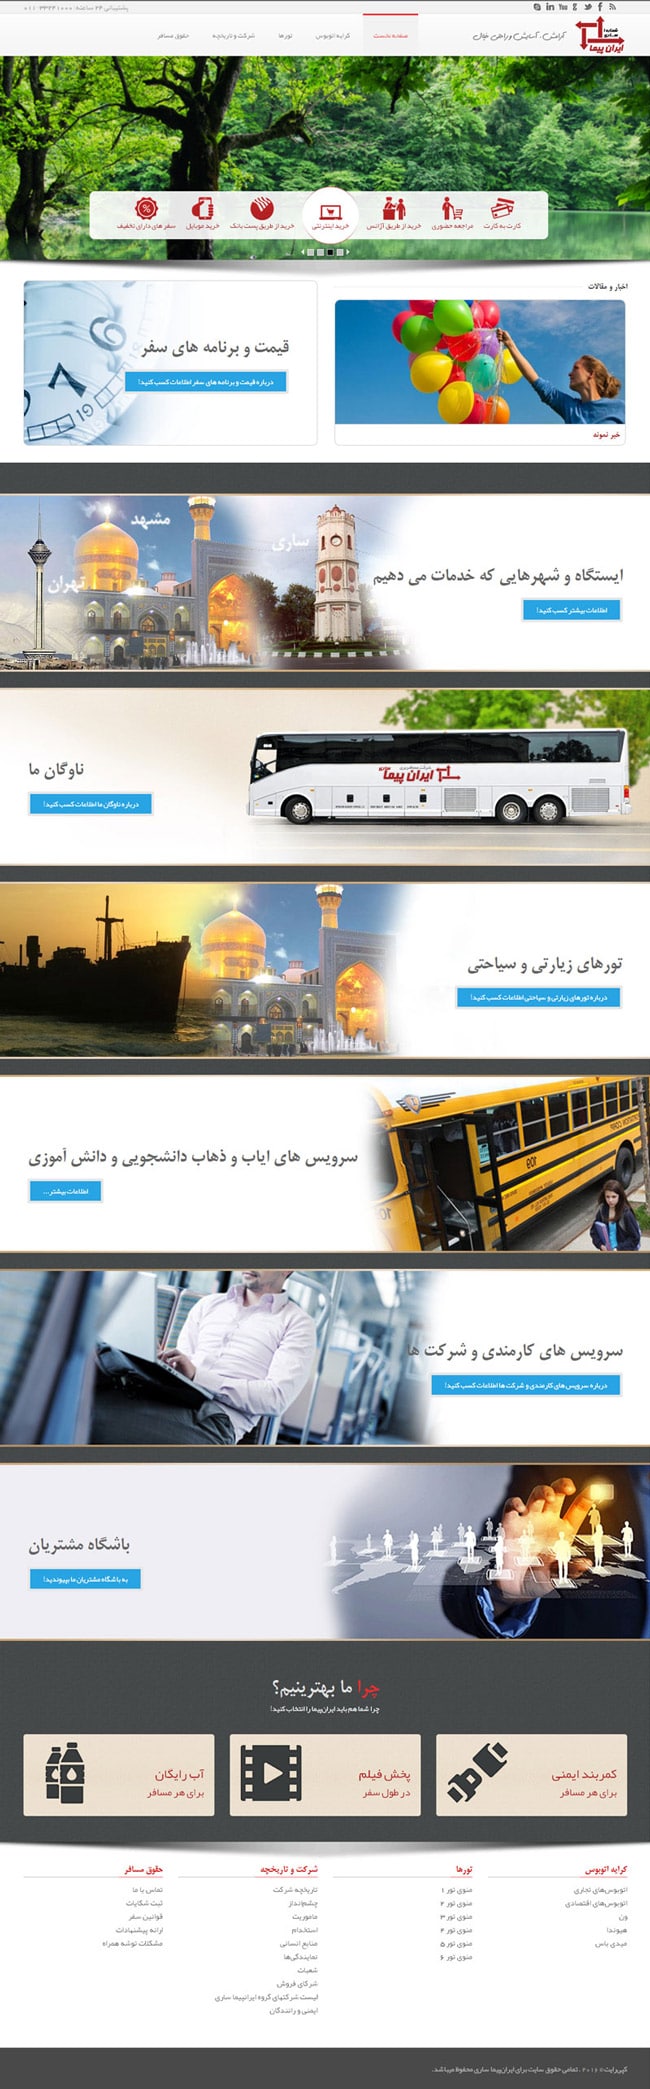 طراحی سایت ایران پیما ساری